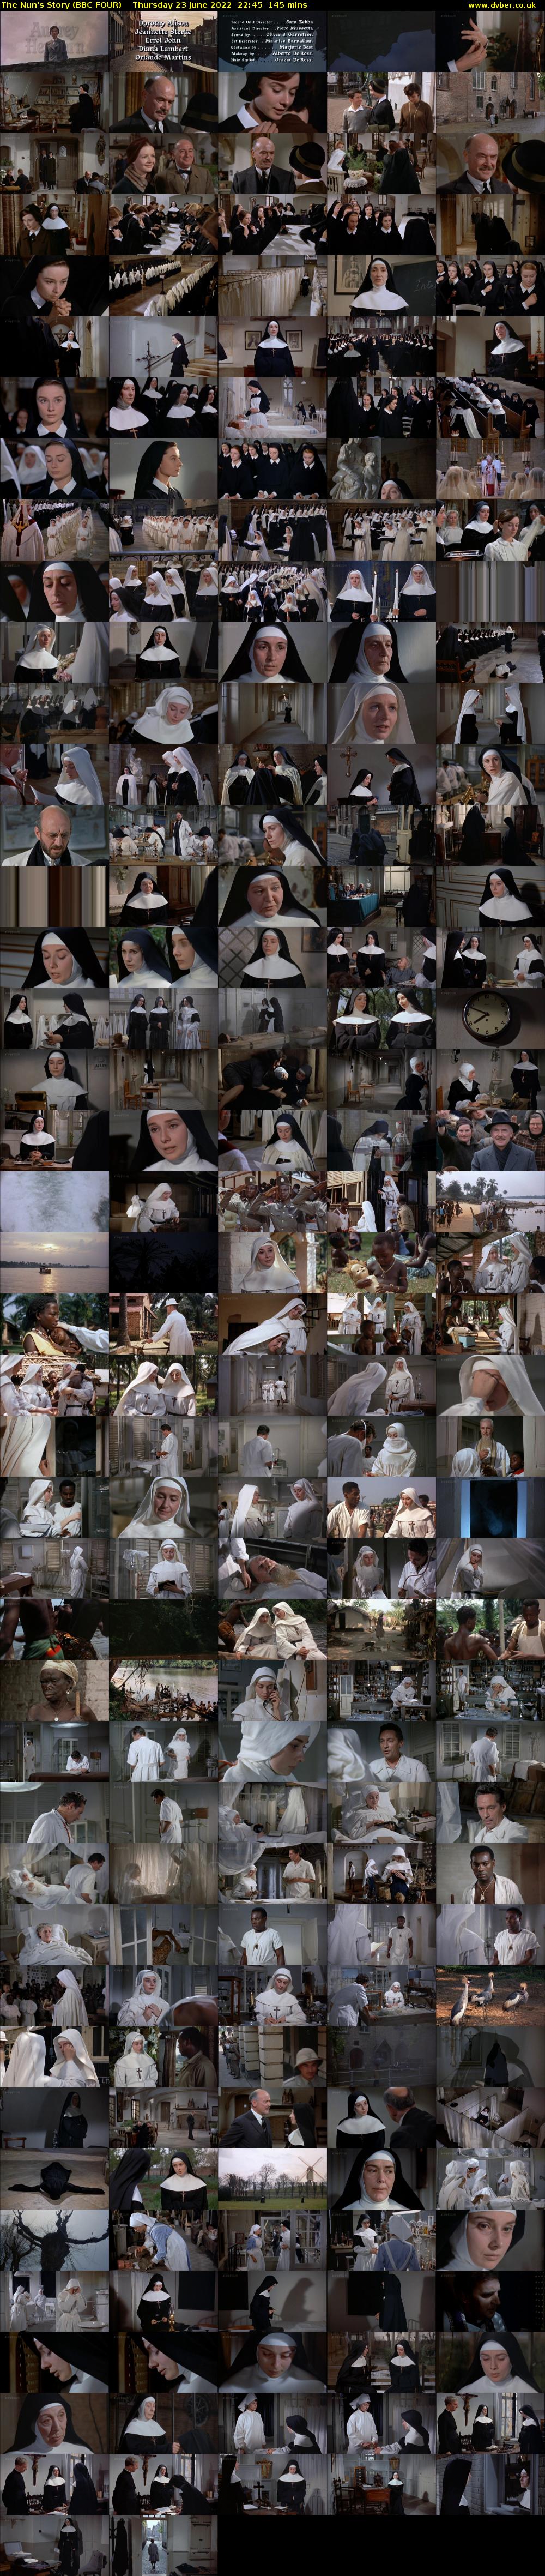 The Nun's Story (BBC FOUR) Thursday 23 June 2022 22:45 - 01:10